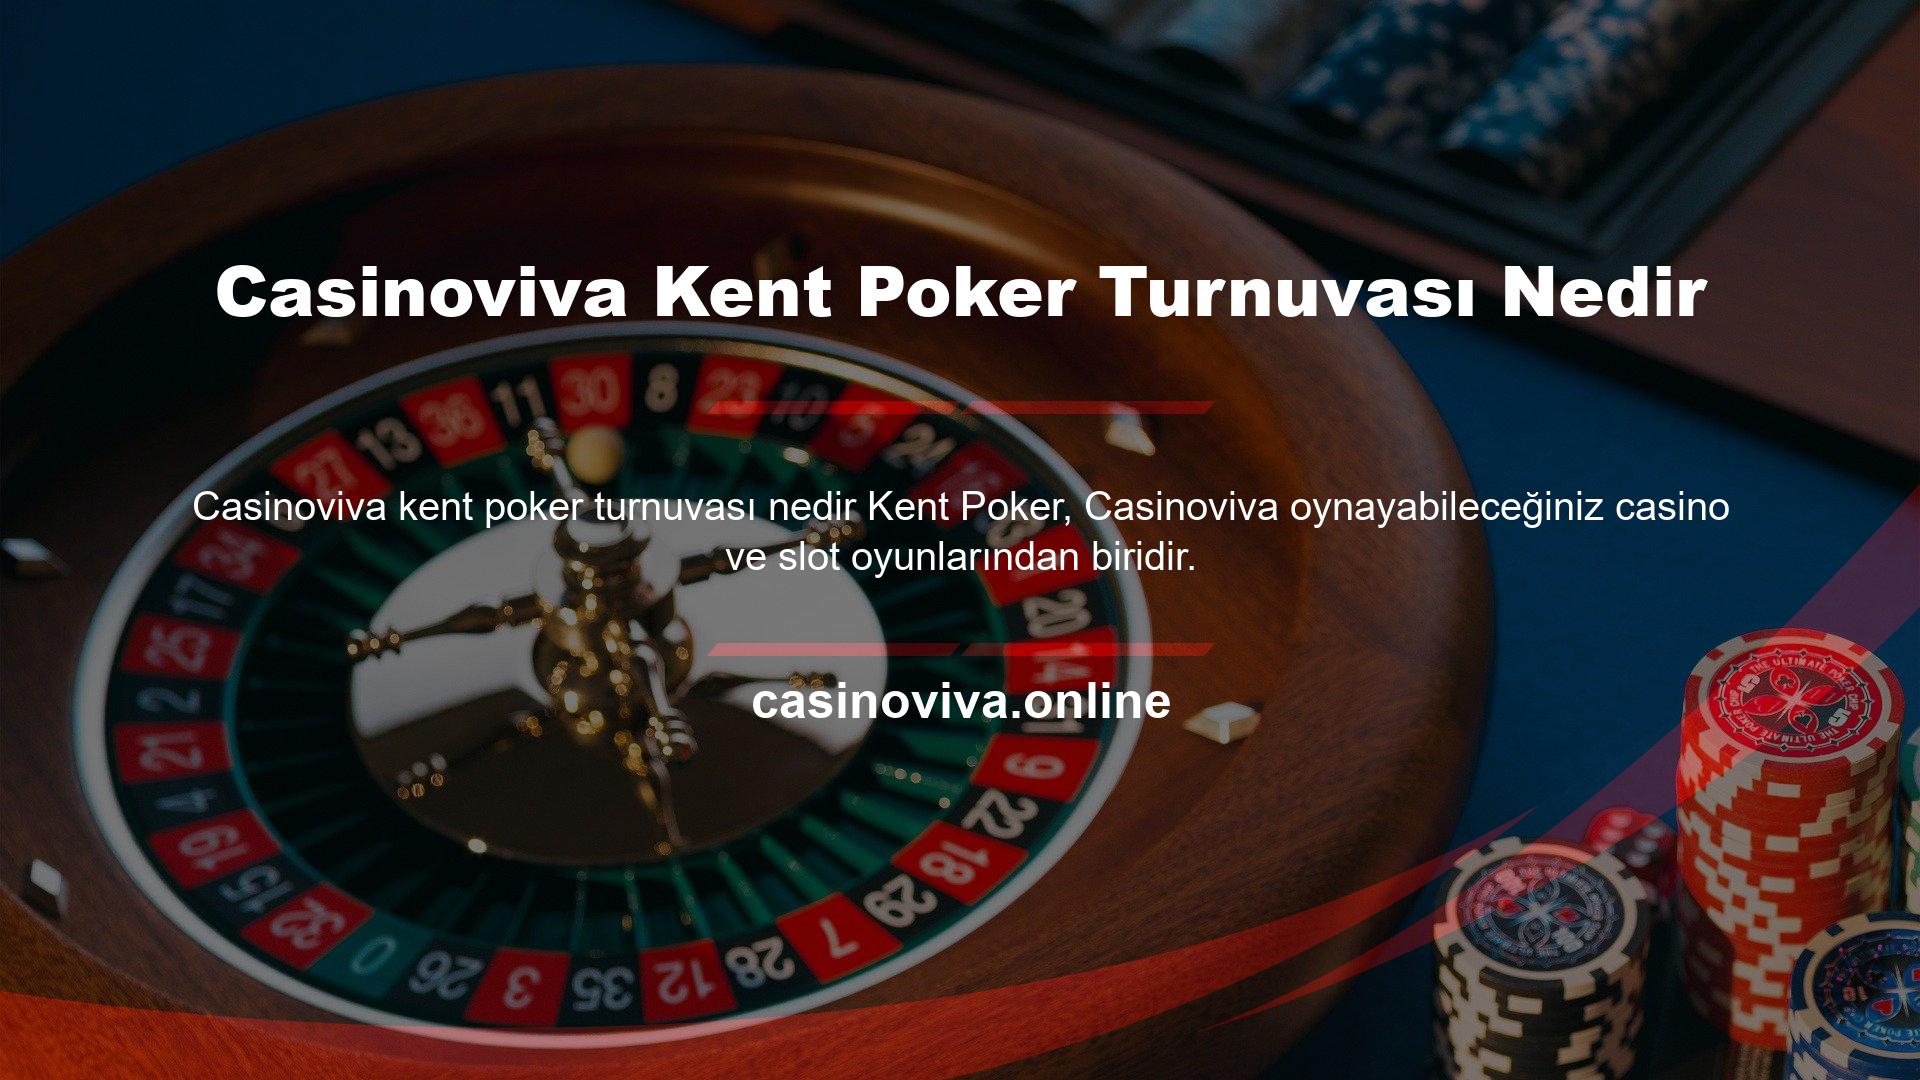 Kent Poker, farklı oyun sağlayıcılardan Casinoviva oynanabilen poker oyunlarından sadece bir tanesidir